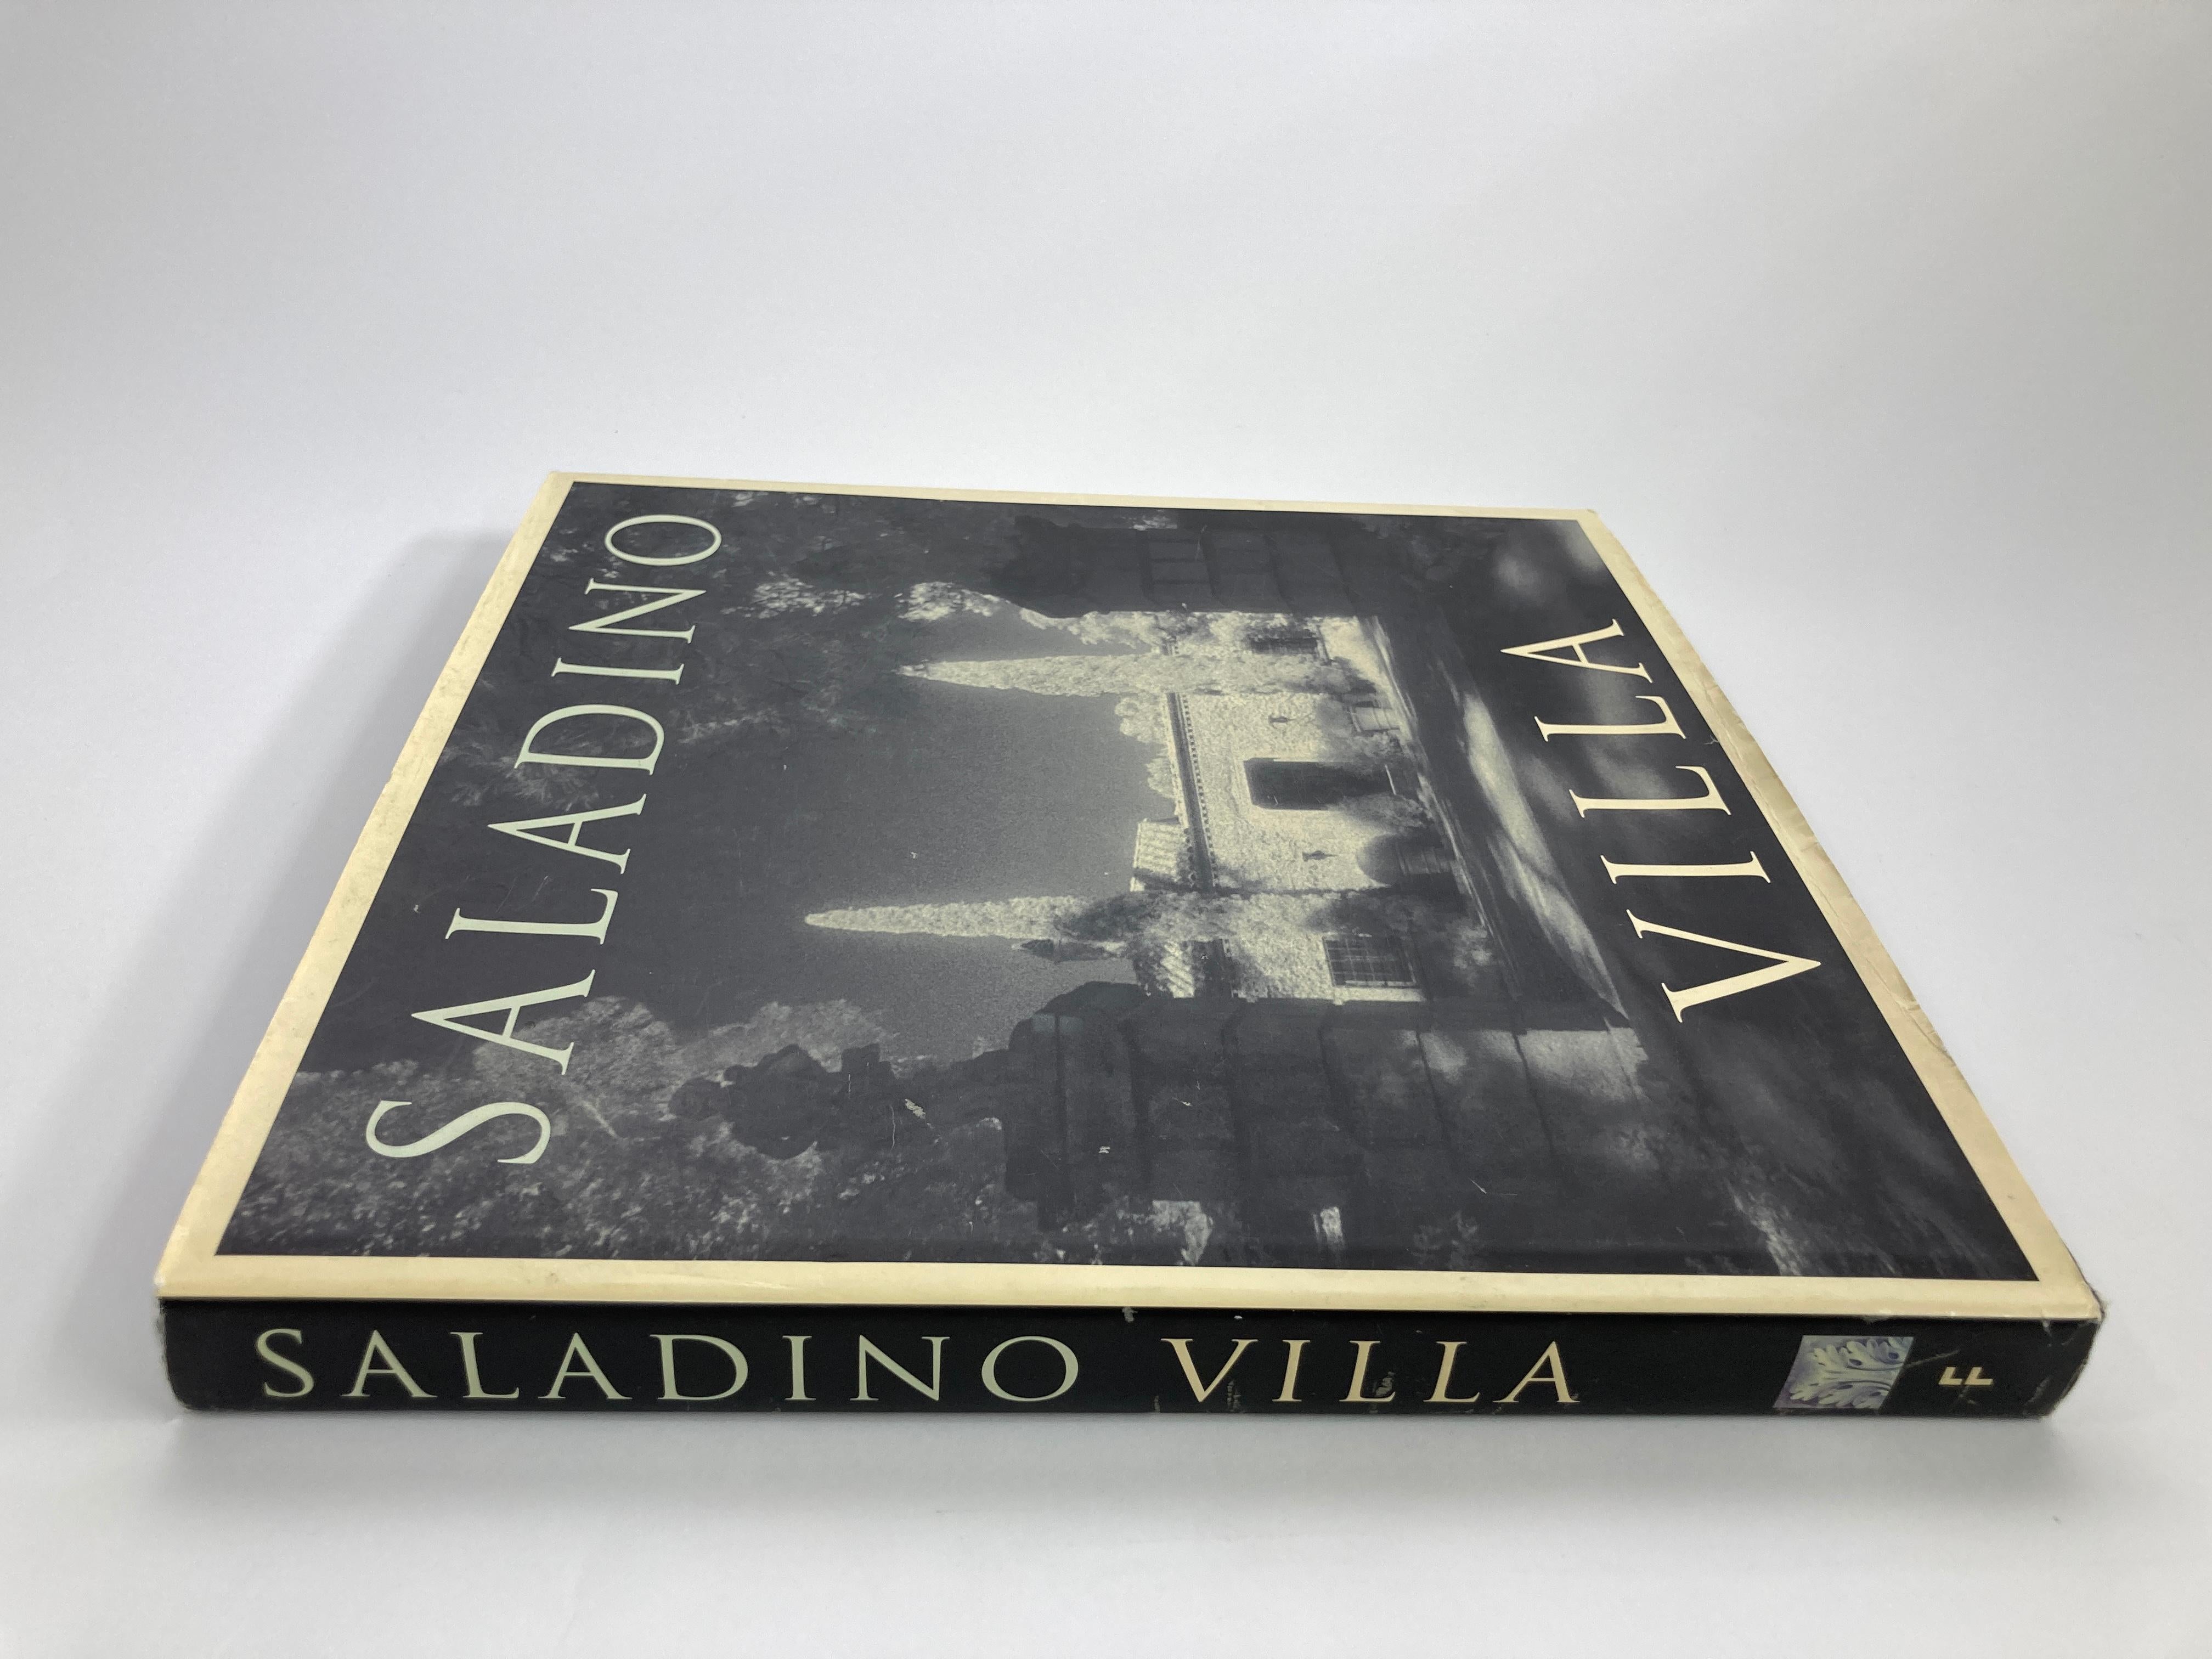 Villa von John Saladino Hardcover großer Bildband.
Die Geschichte von Saladinos Restaurierung eines ursprünglich von Wallace Frost entworfenen Steinhauses und seines Gartens in Kalifornien mit Blick auf den Pazifik. 
Mit Abschnitten über